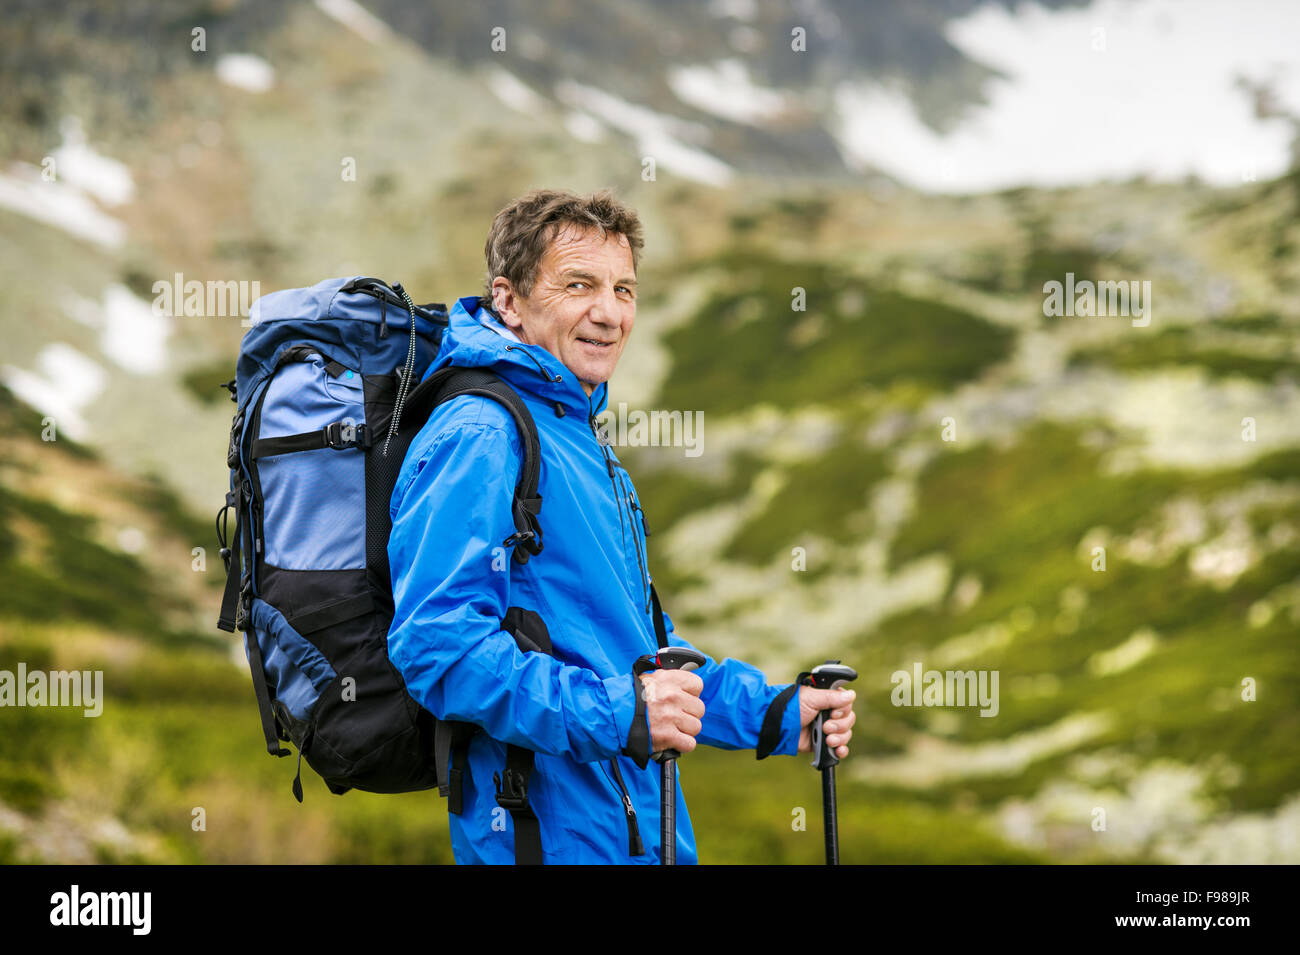 Senior tourist man hiking at the beautiful mountains Stock Photo